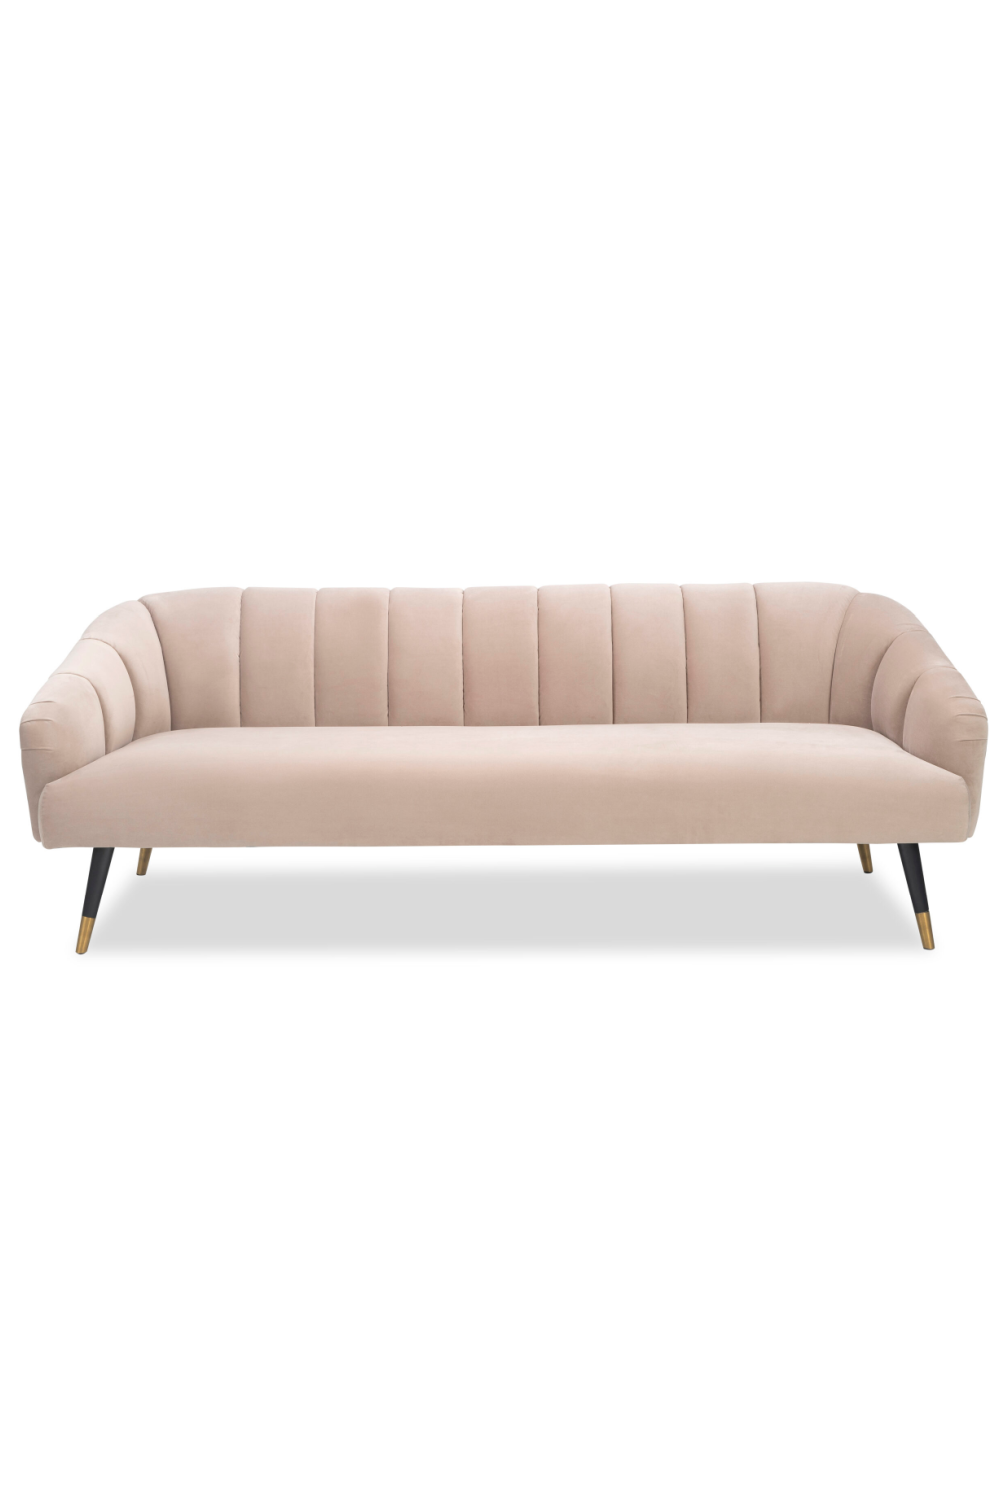 Avalon Velvet Upholstered Sofa | Liang & Eimil Bisset | Oroa.com